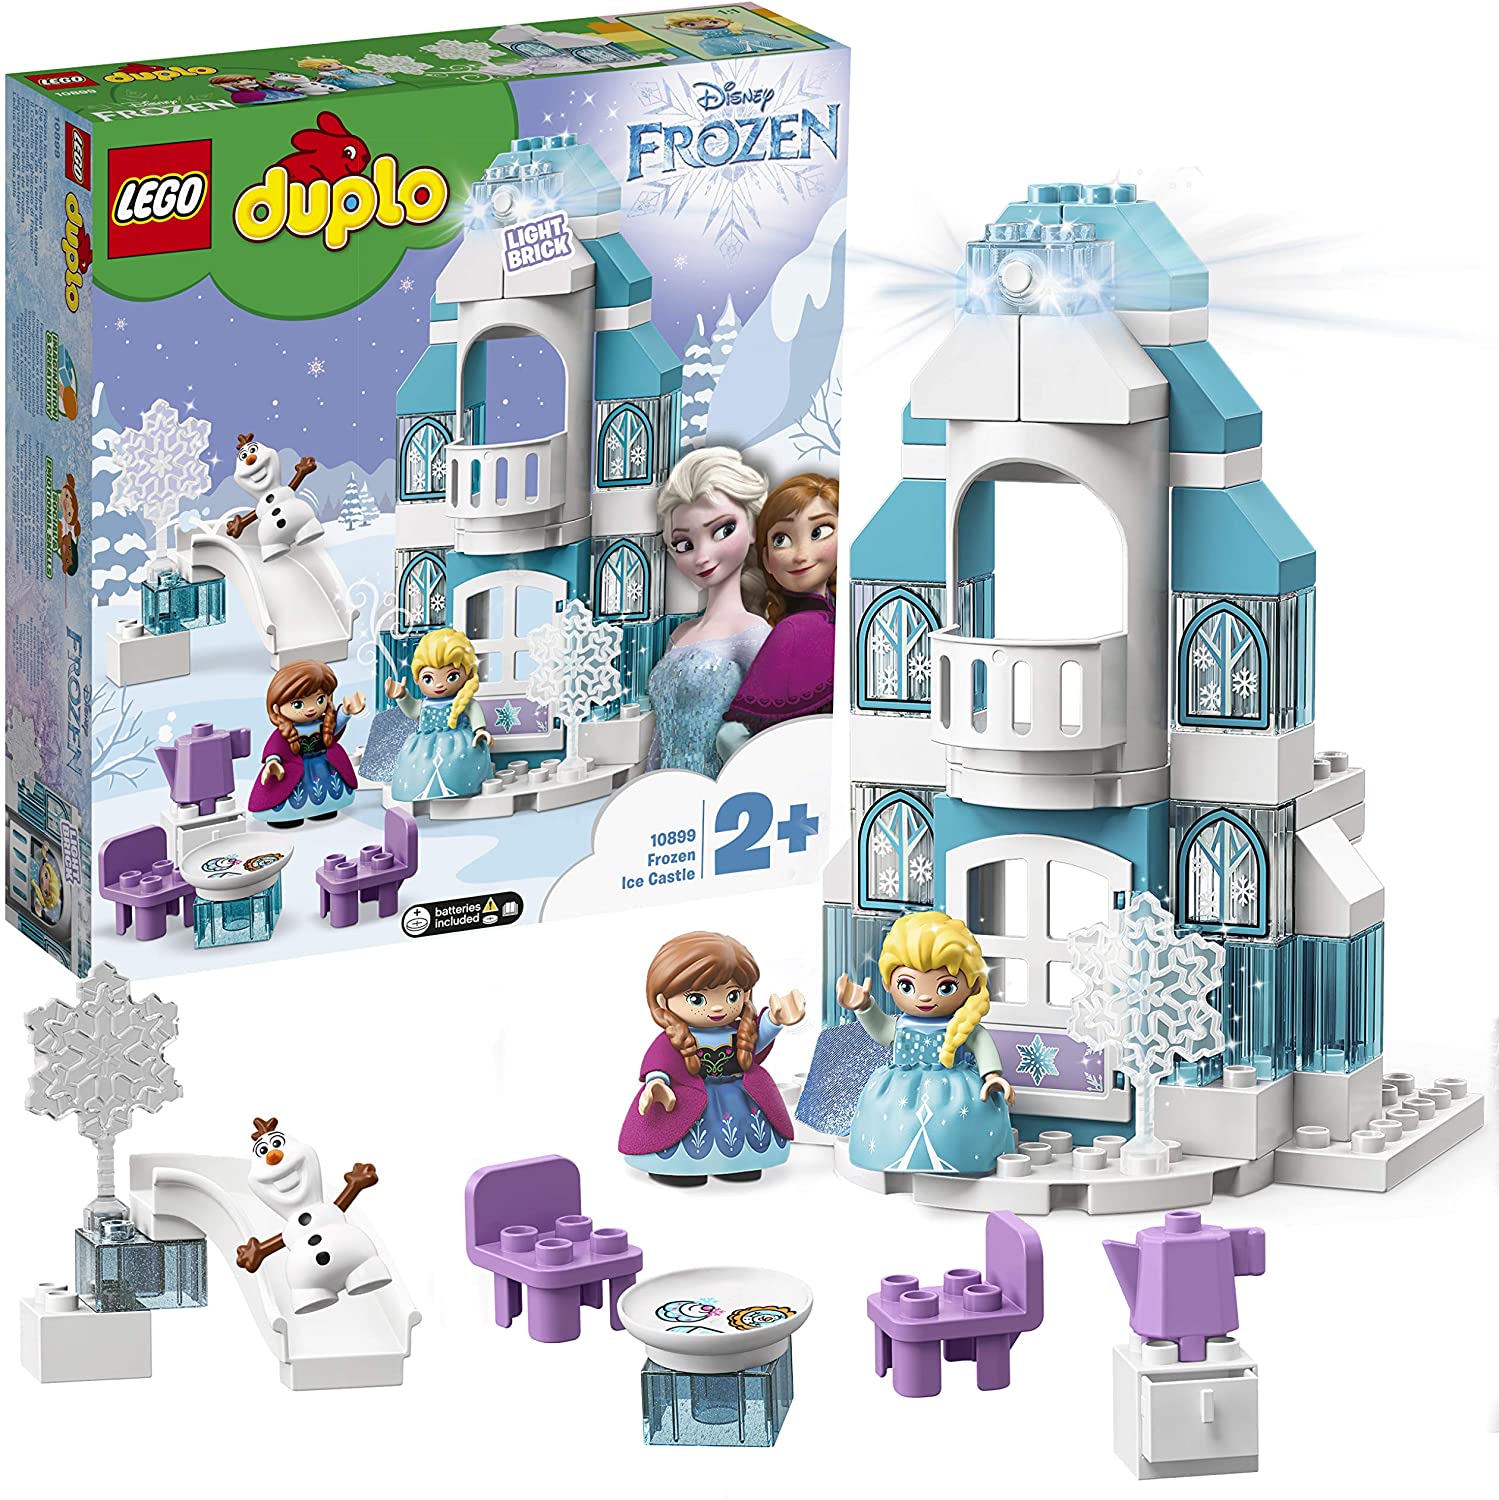 LEGO Duplo - Frozen ice Castle (10899) | LEGO image3